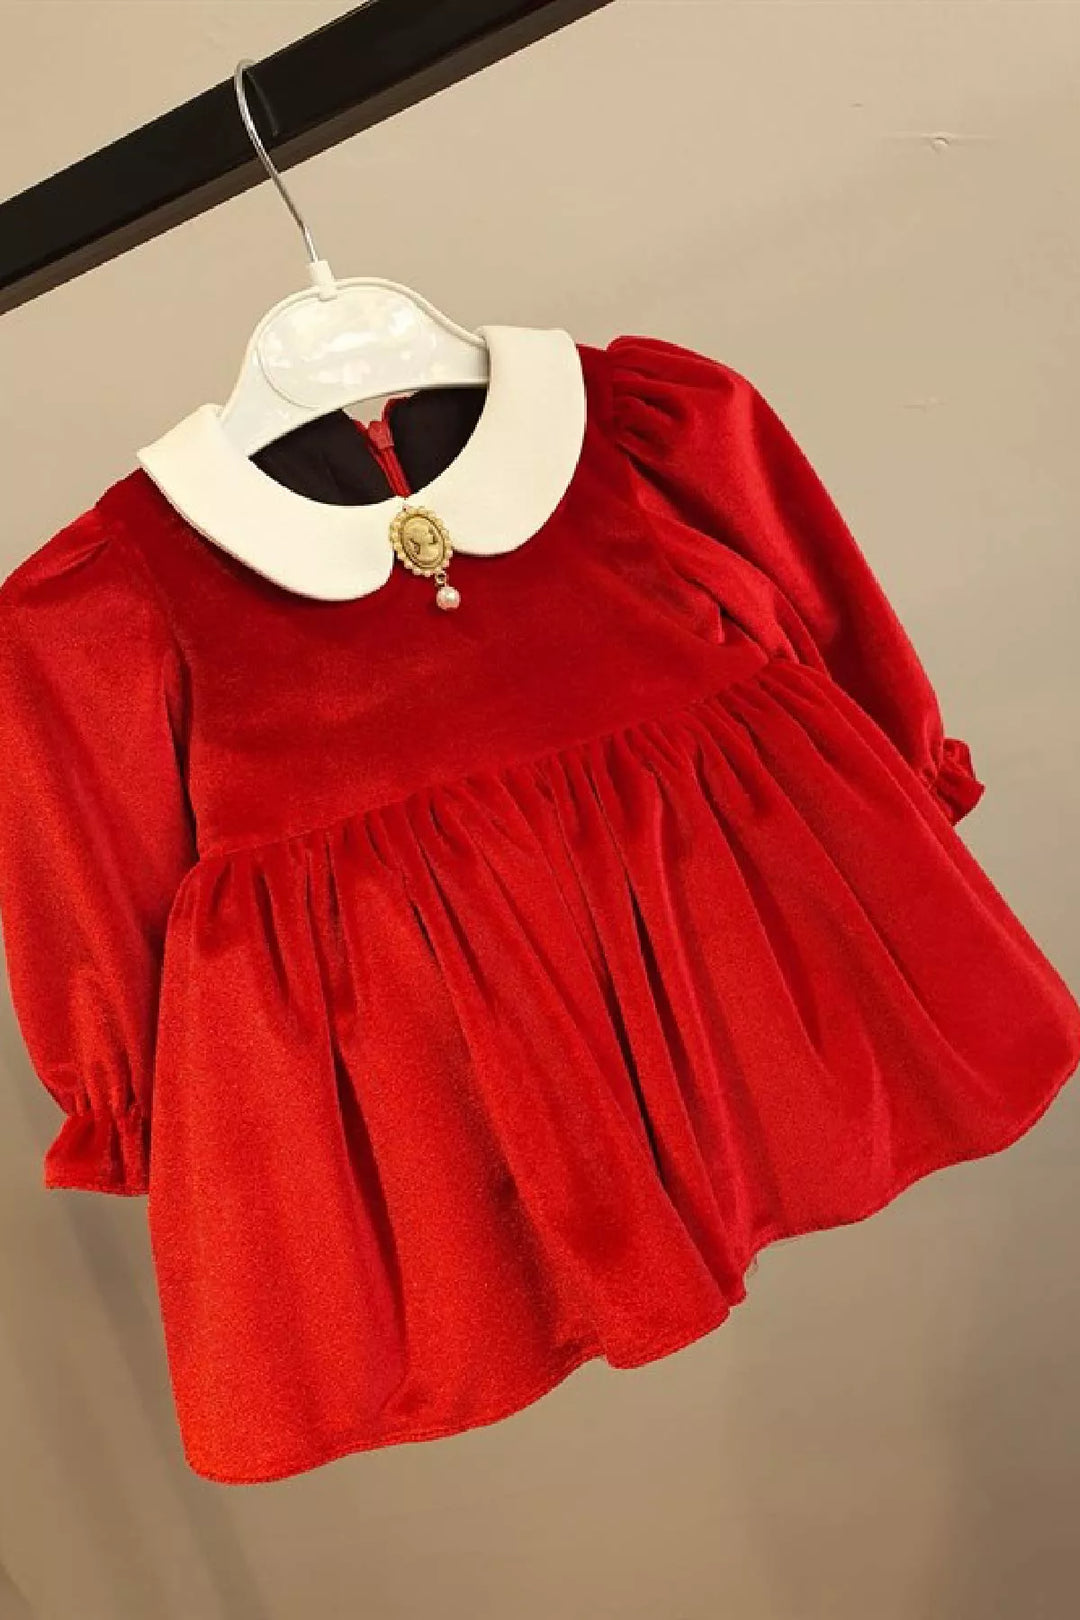 Cute red velvet baby dress